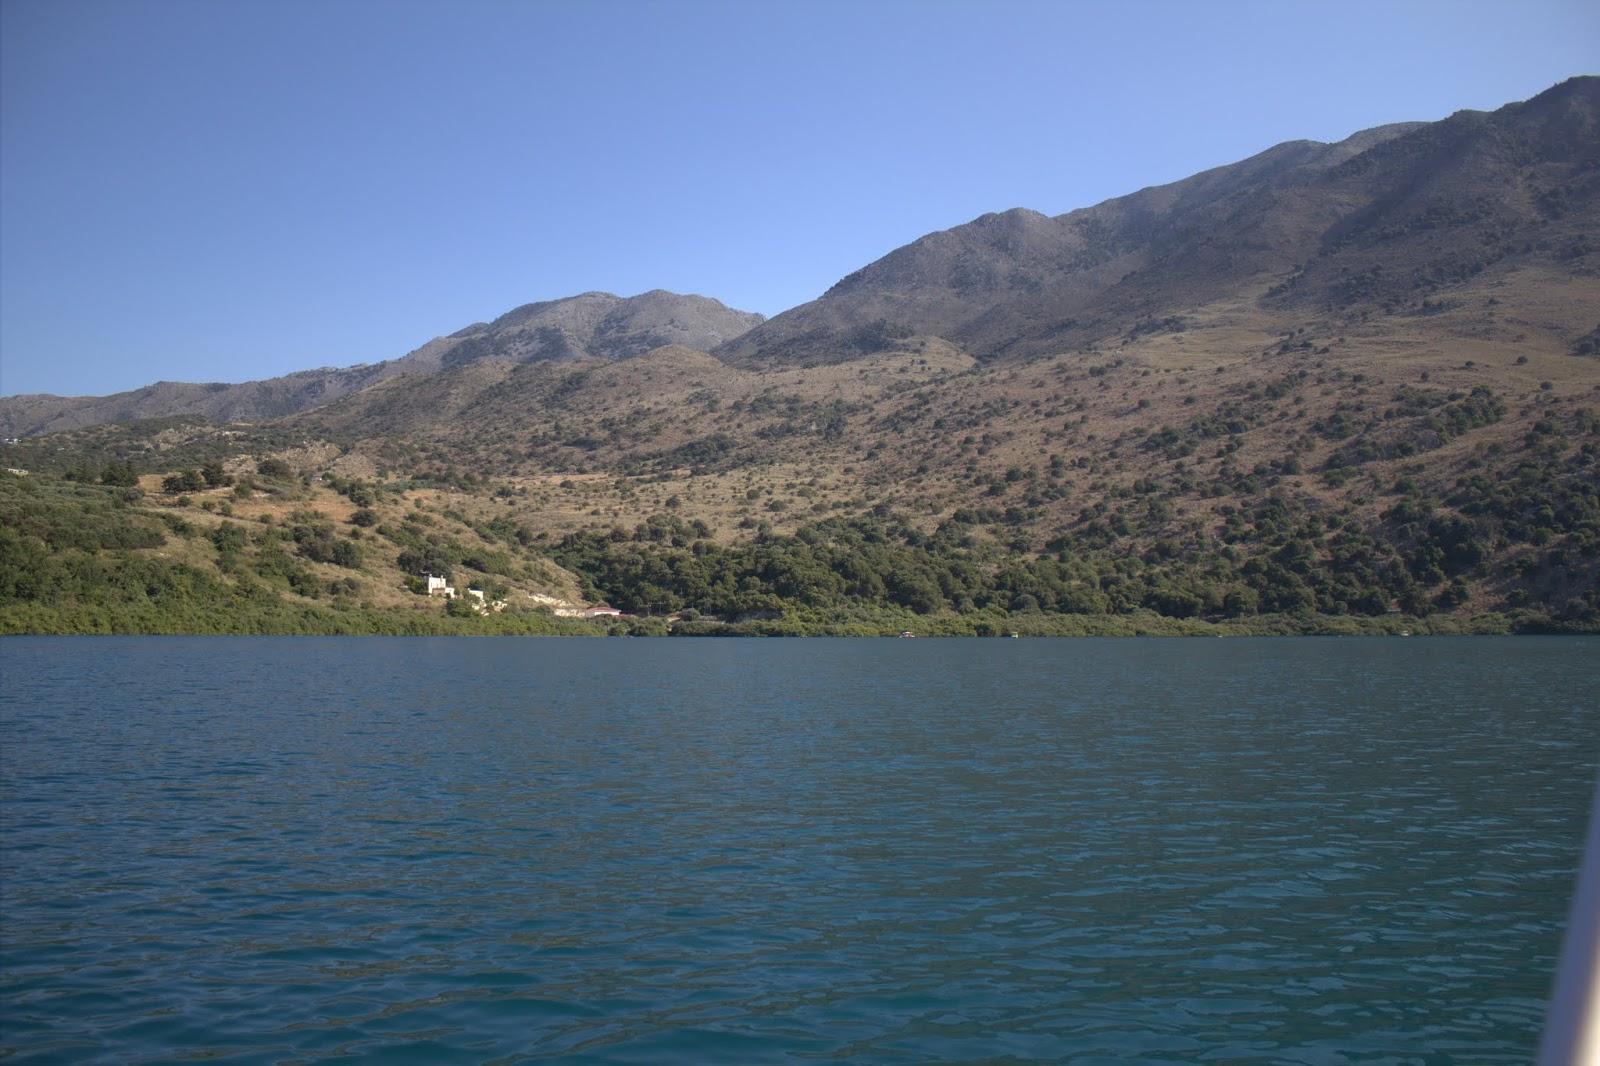 Sandee - Lake Kournas